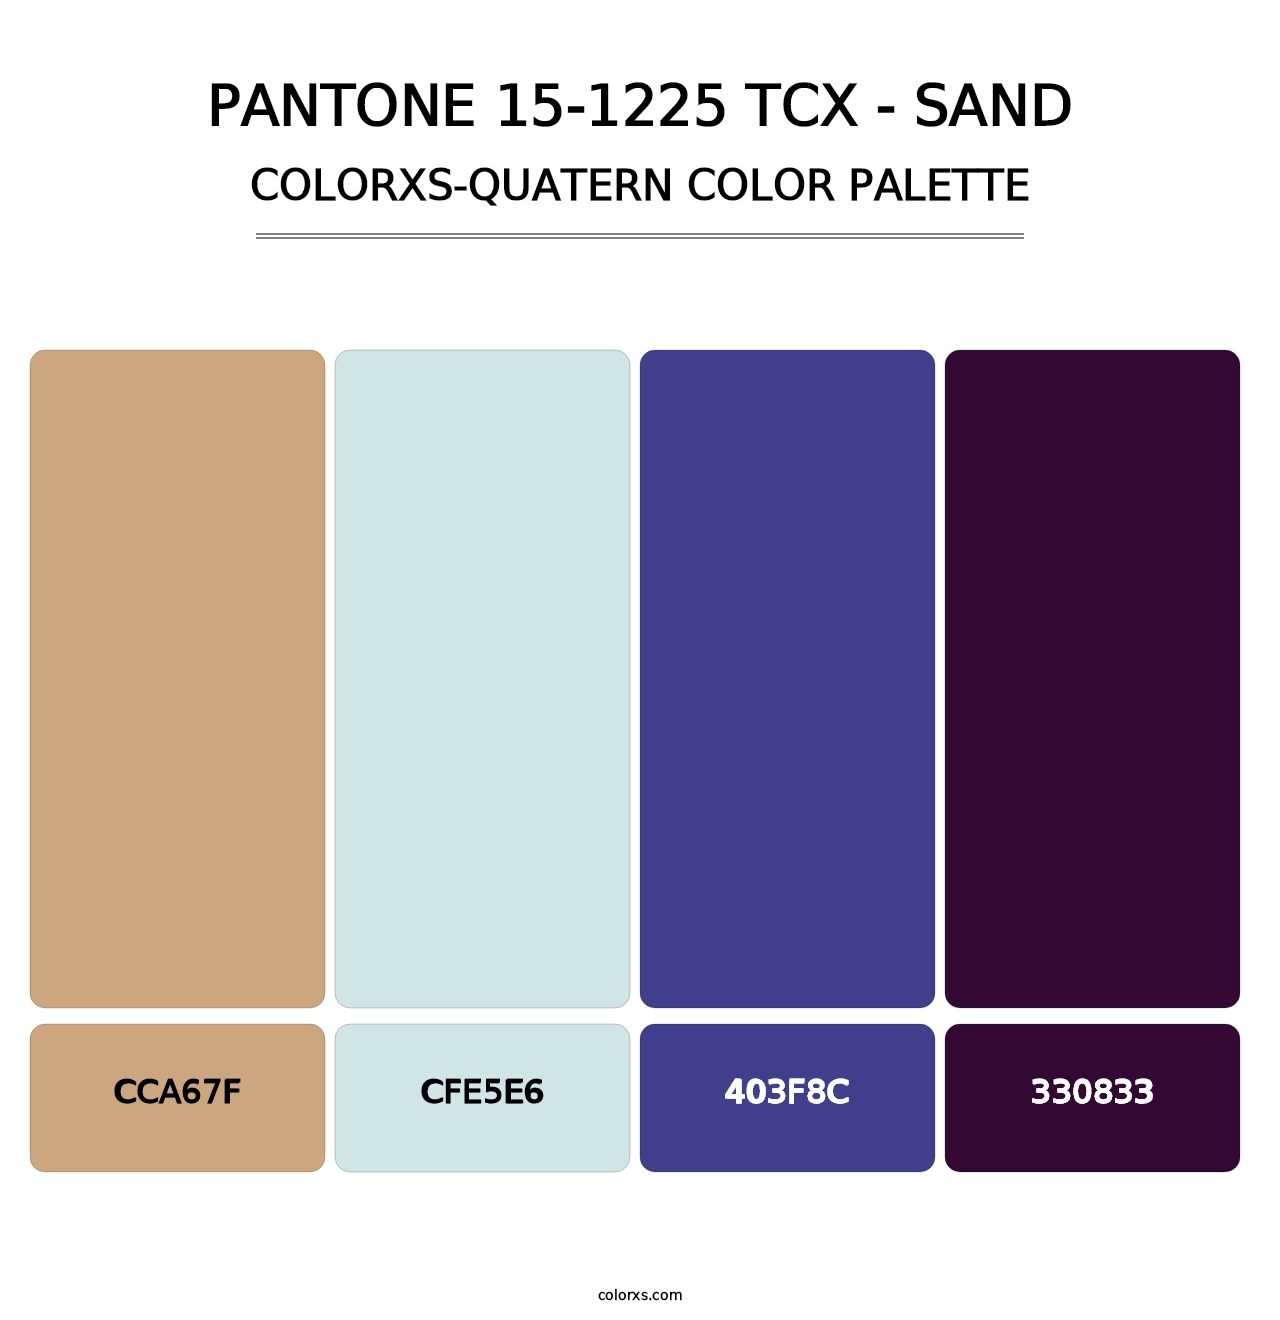 PANTONE 15-1225 TCX - Sand - Colorxs Quatern Palette